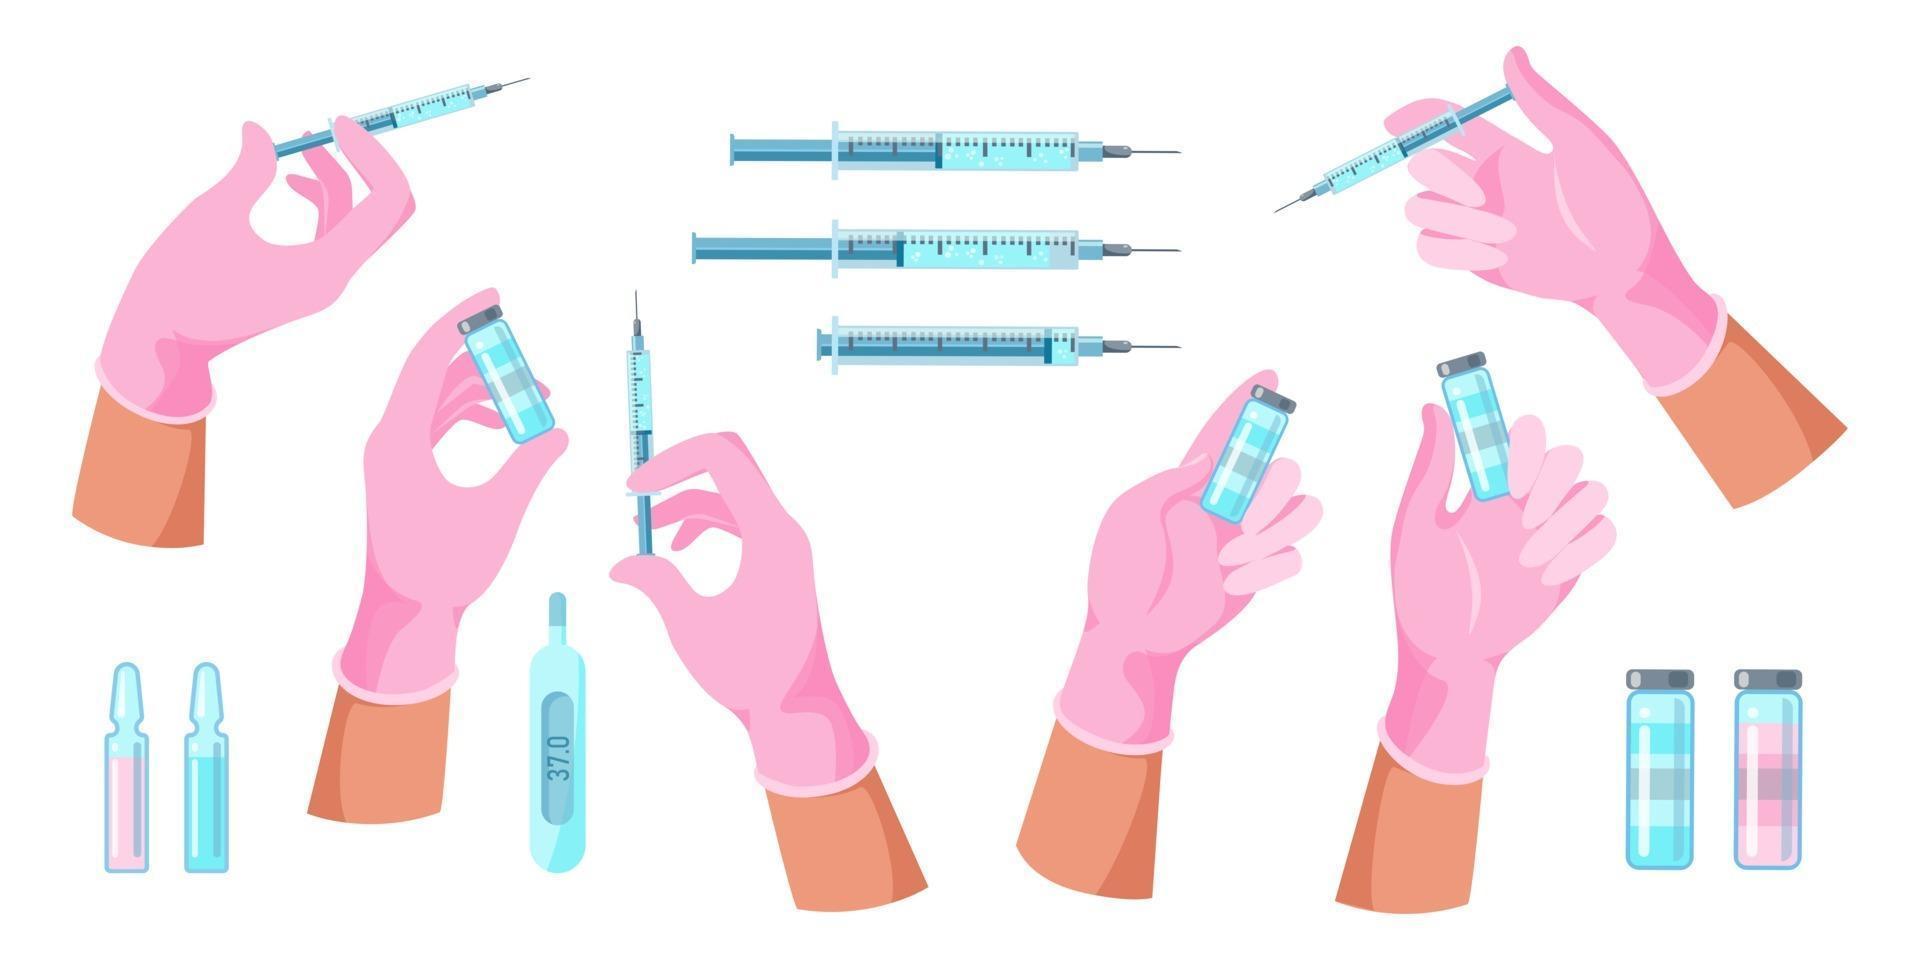 mãos do médico com seringa, frasco com vacina vetor